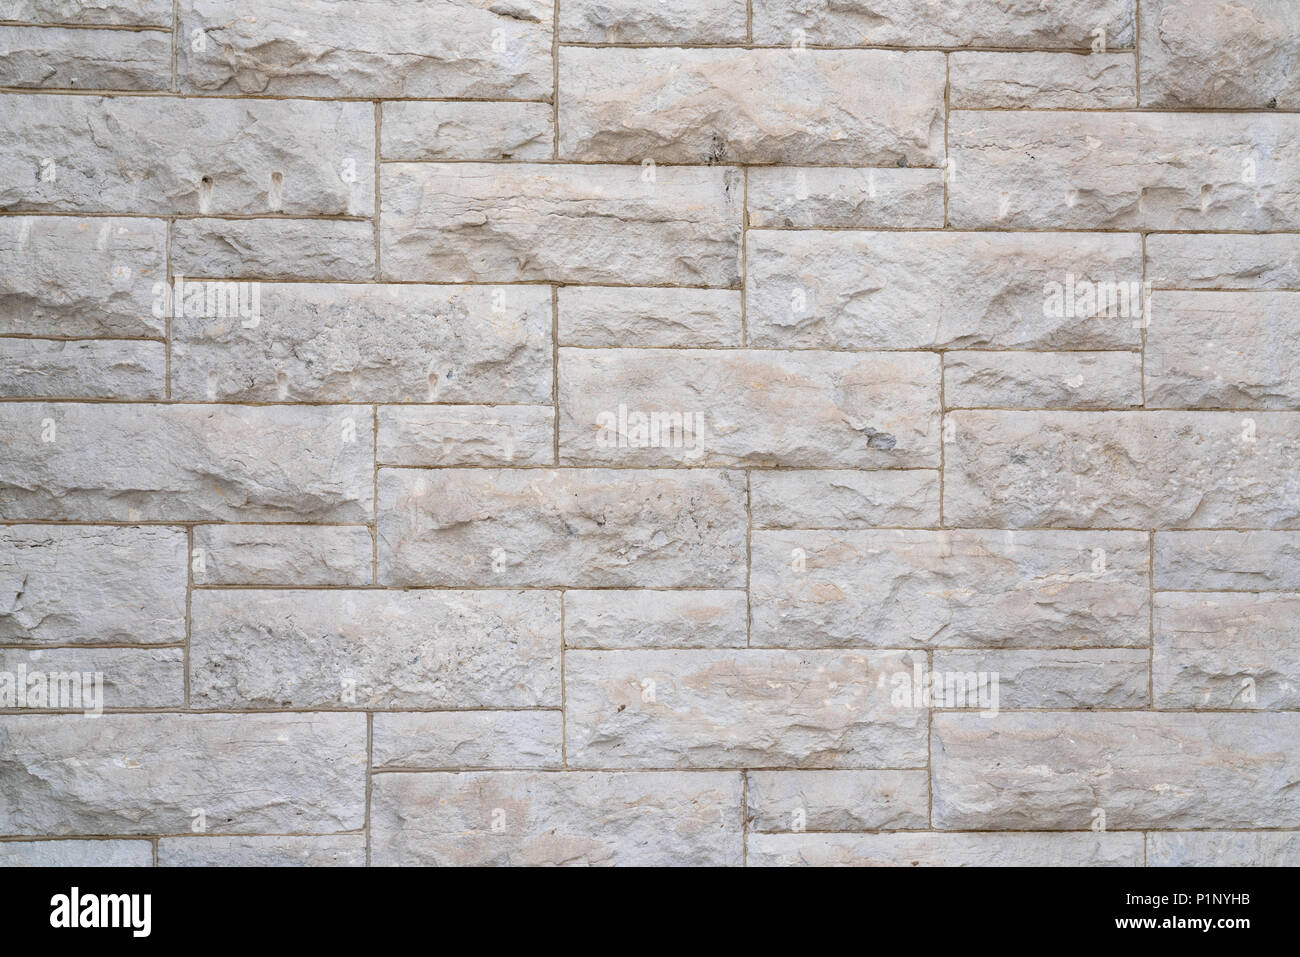 Limestone Block Wall Background Stock Photo